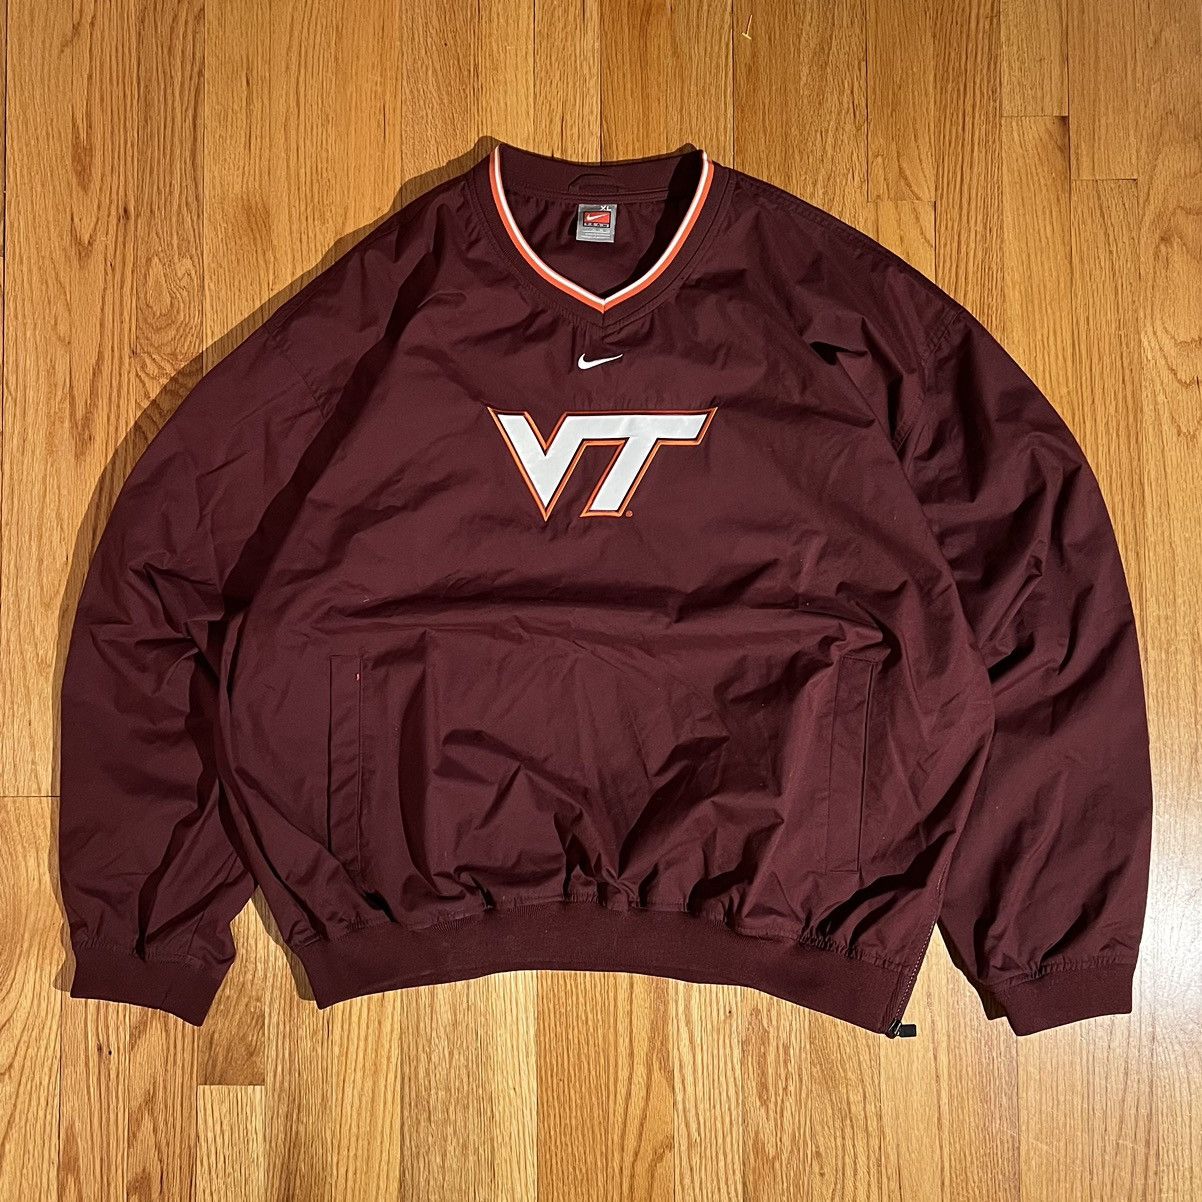 Nike Virginia Tech Sweatshirt Size US XL / EU 56 / 4 - 1 Preview